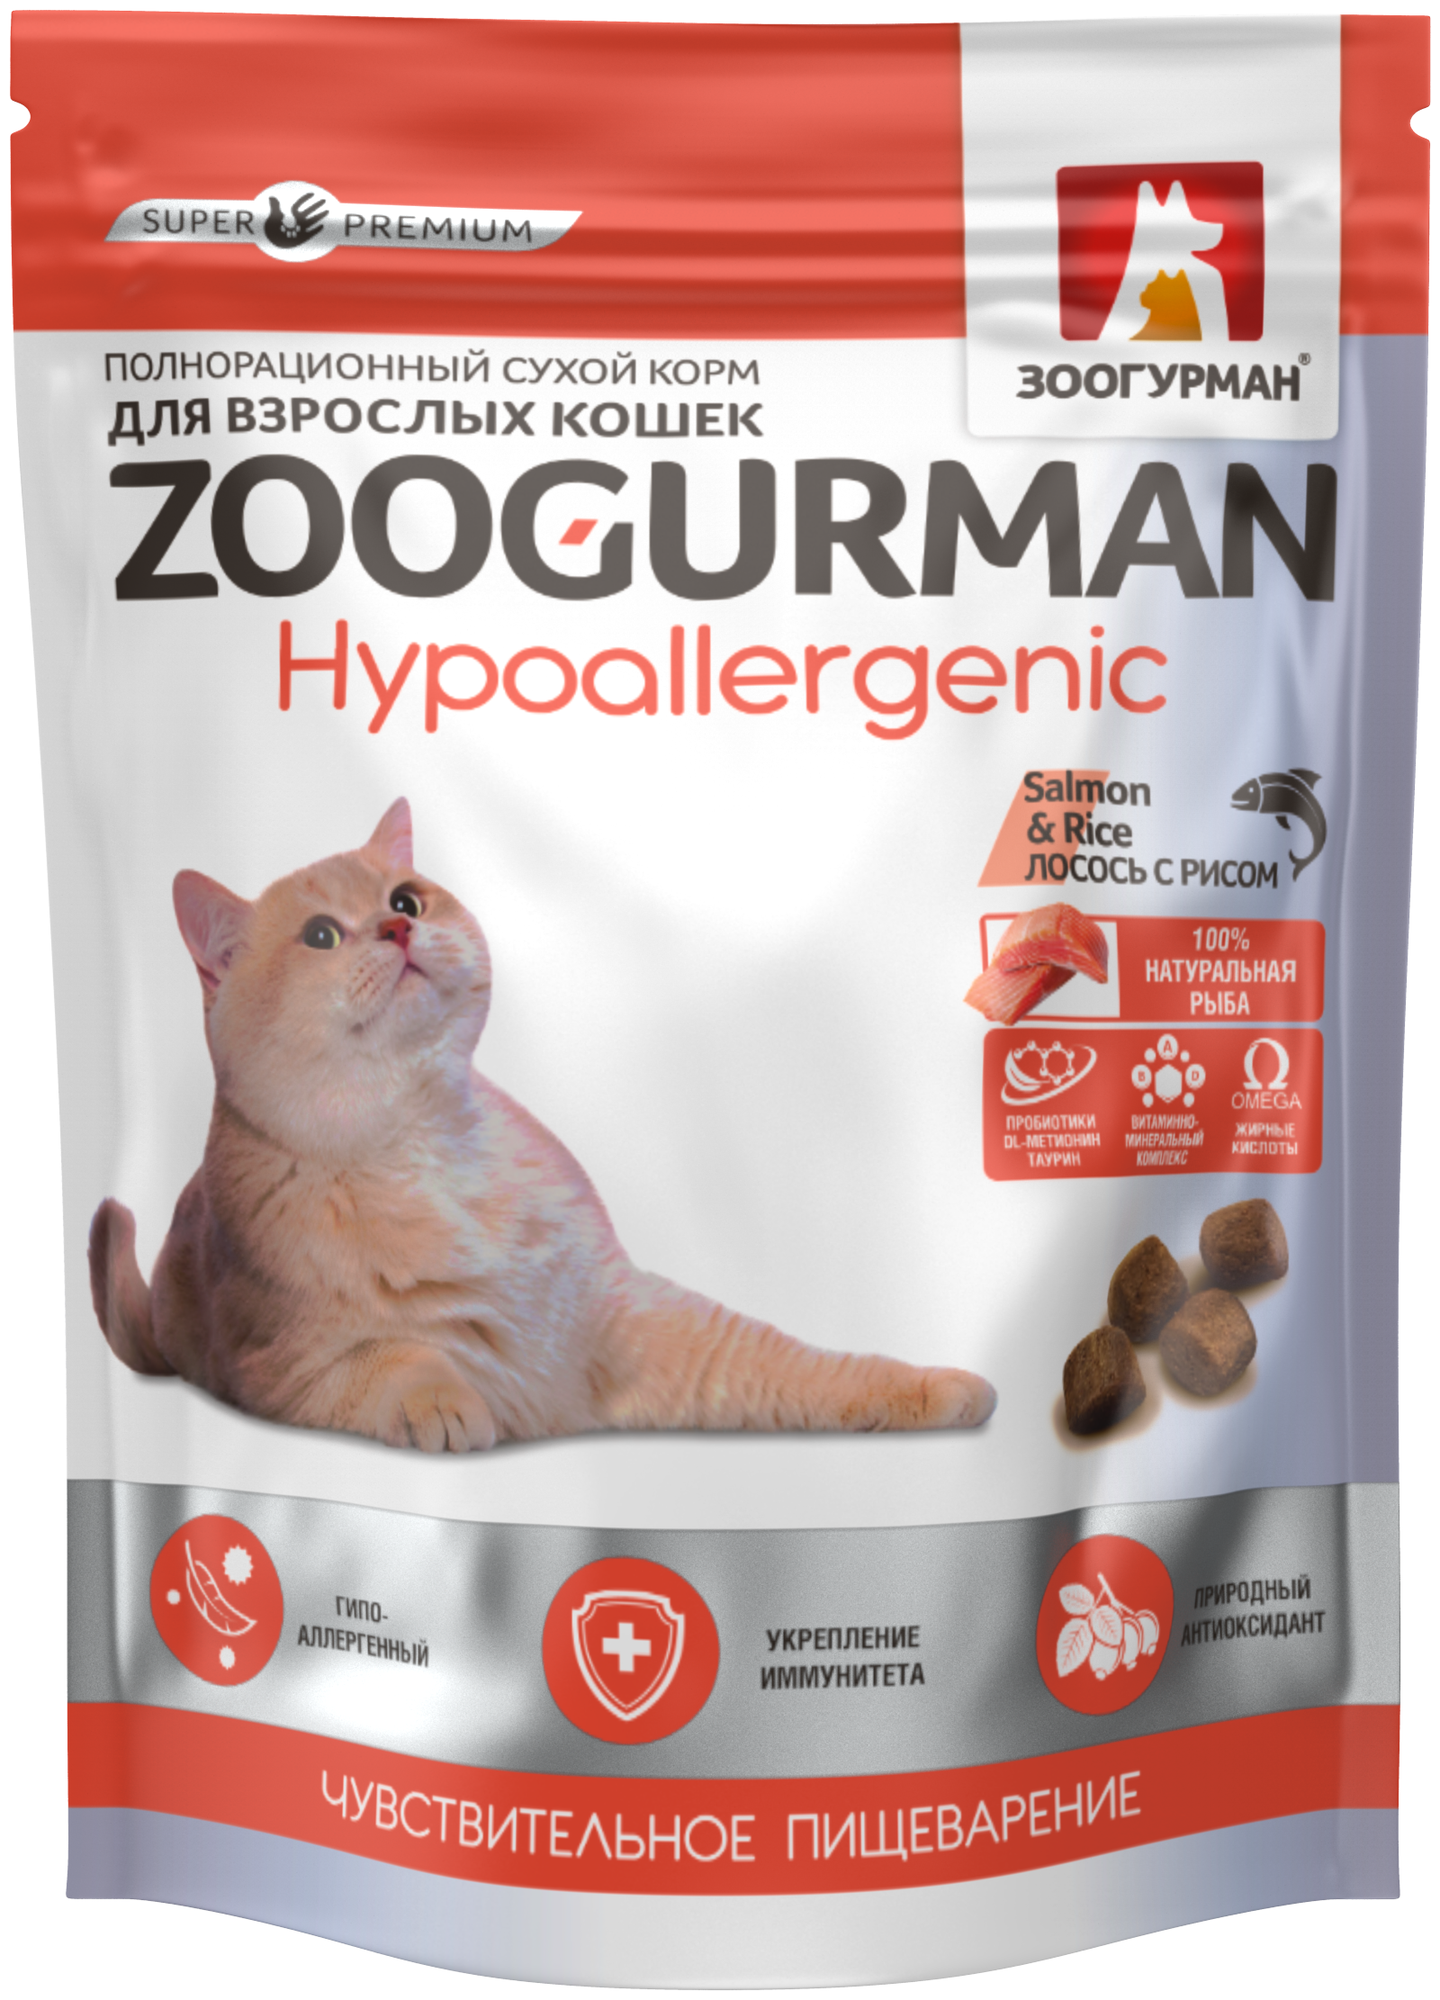 Полнорационный сухой корм для взрослых кошек Zoogurman Hypoallergenic Лосось с рисом/Salmon & Rice 350 г